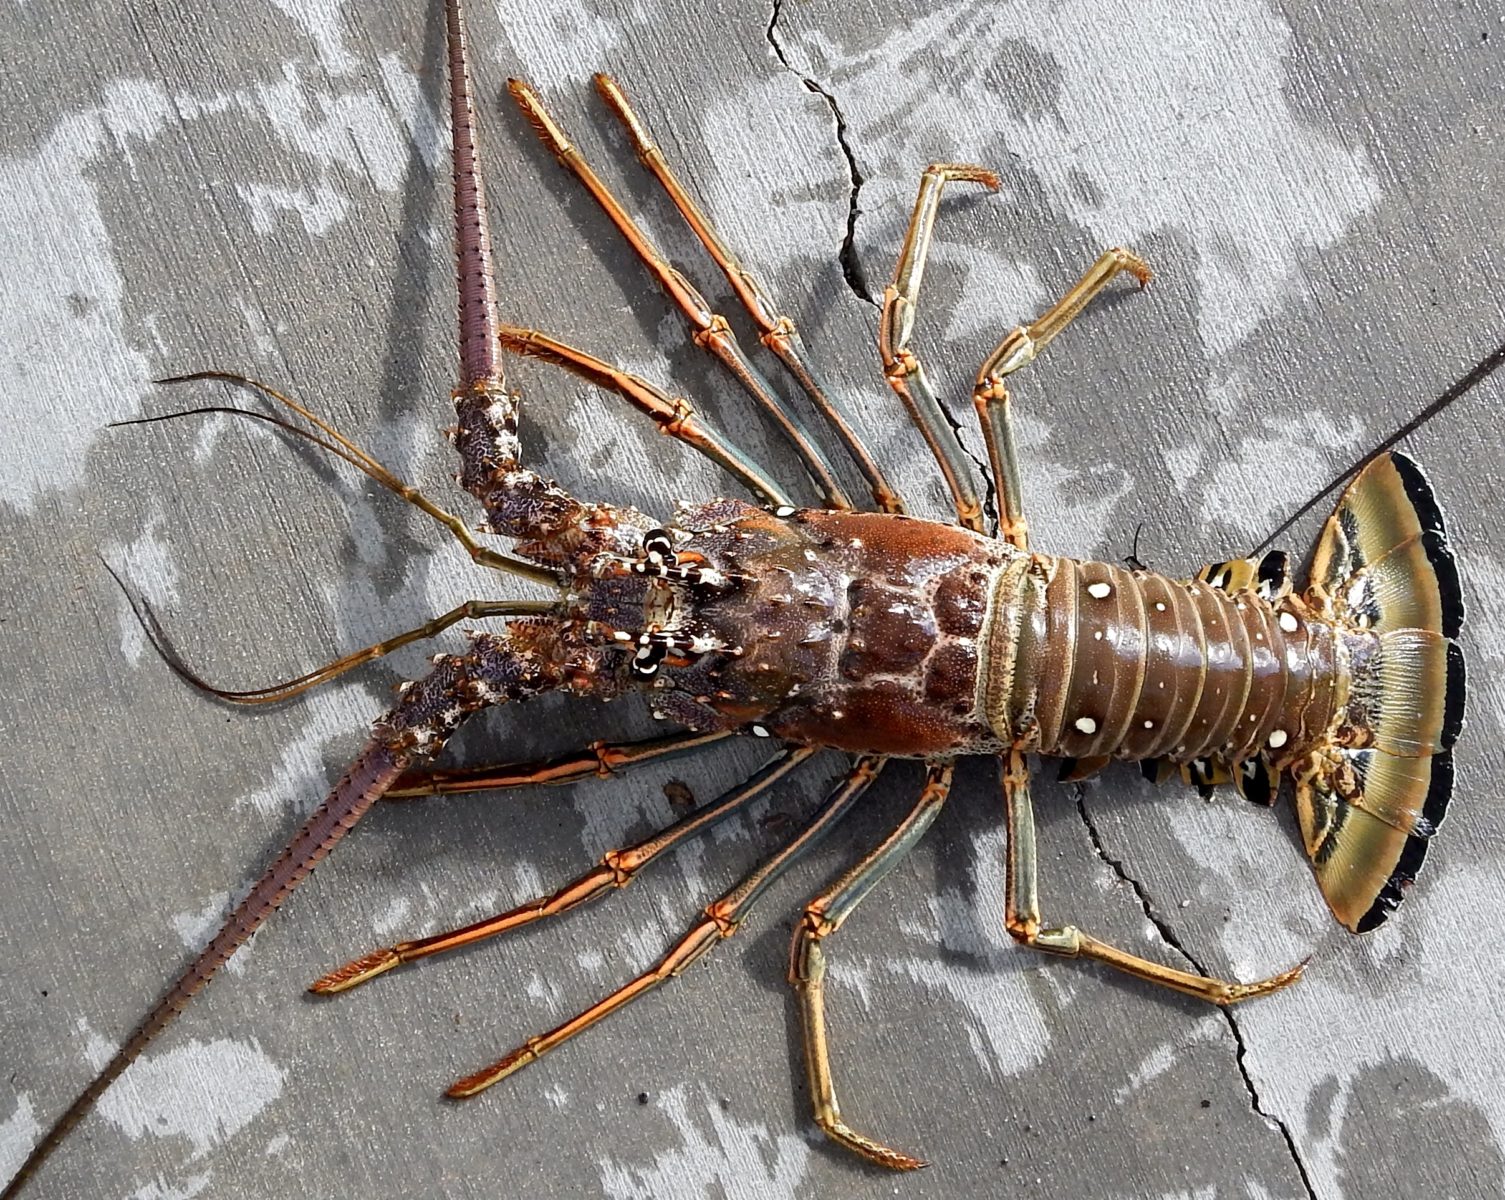 Florida Keys twoday lobster miniseason arrives July 25 and 26 KONK Life